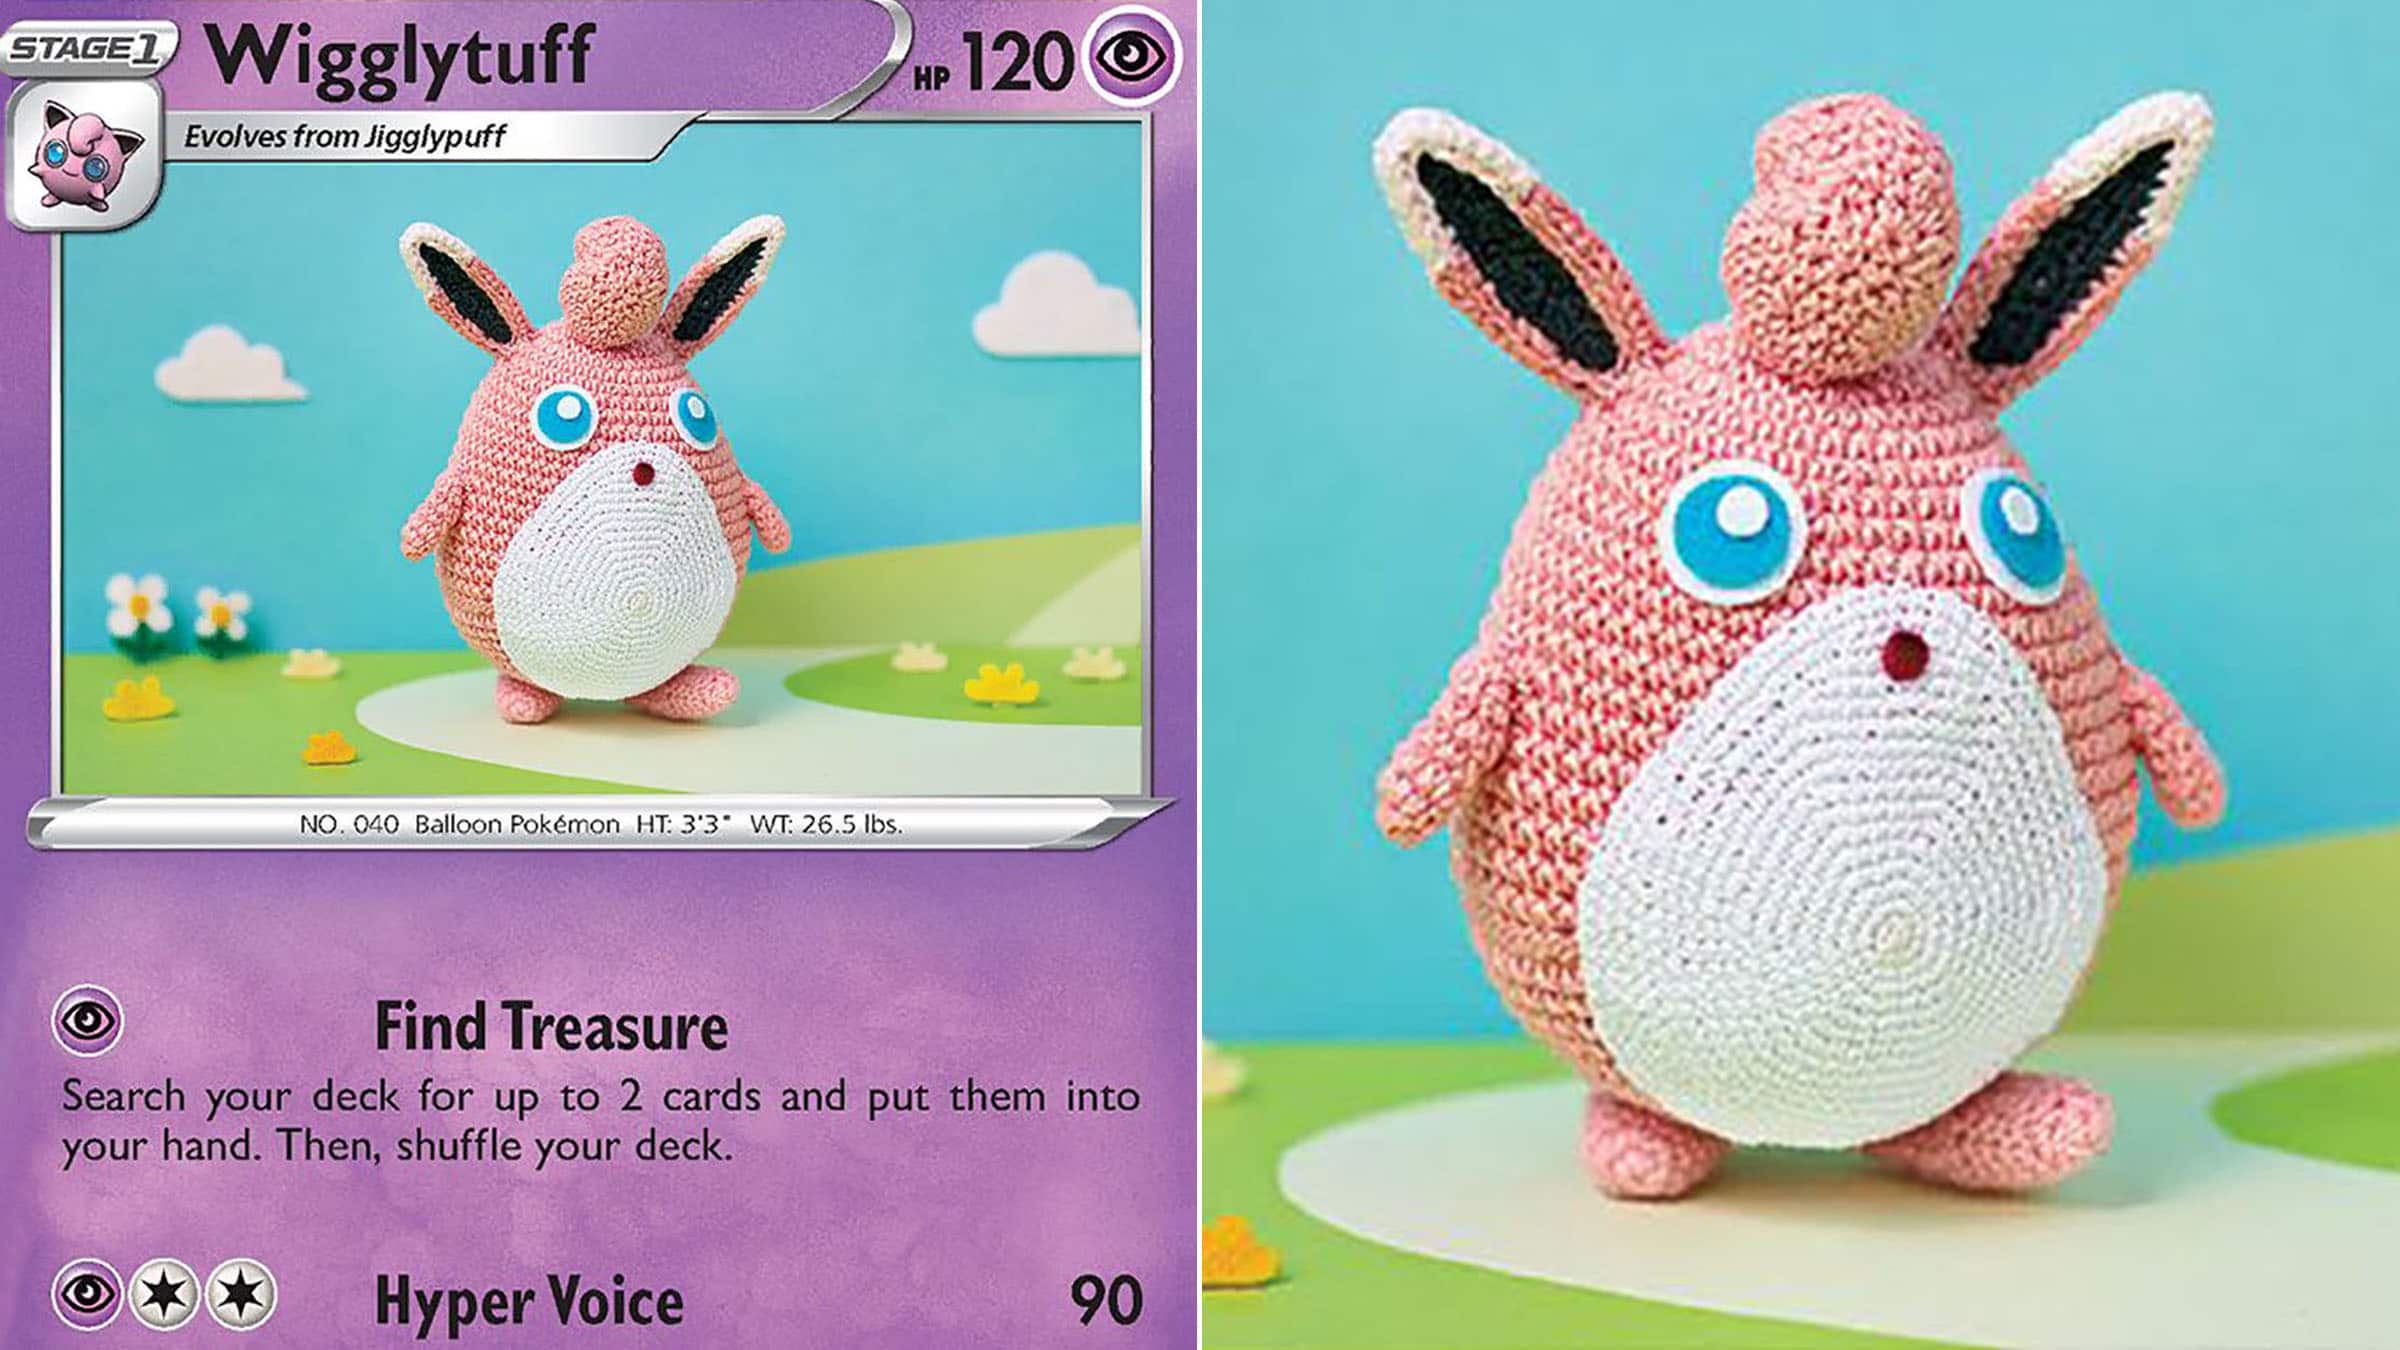 Des cartes Pokémon officielles avec des créatures réalisées en crochet